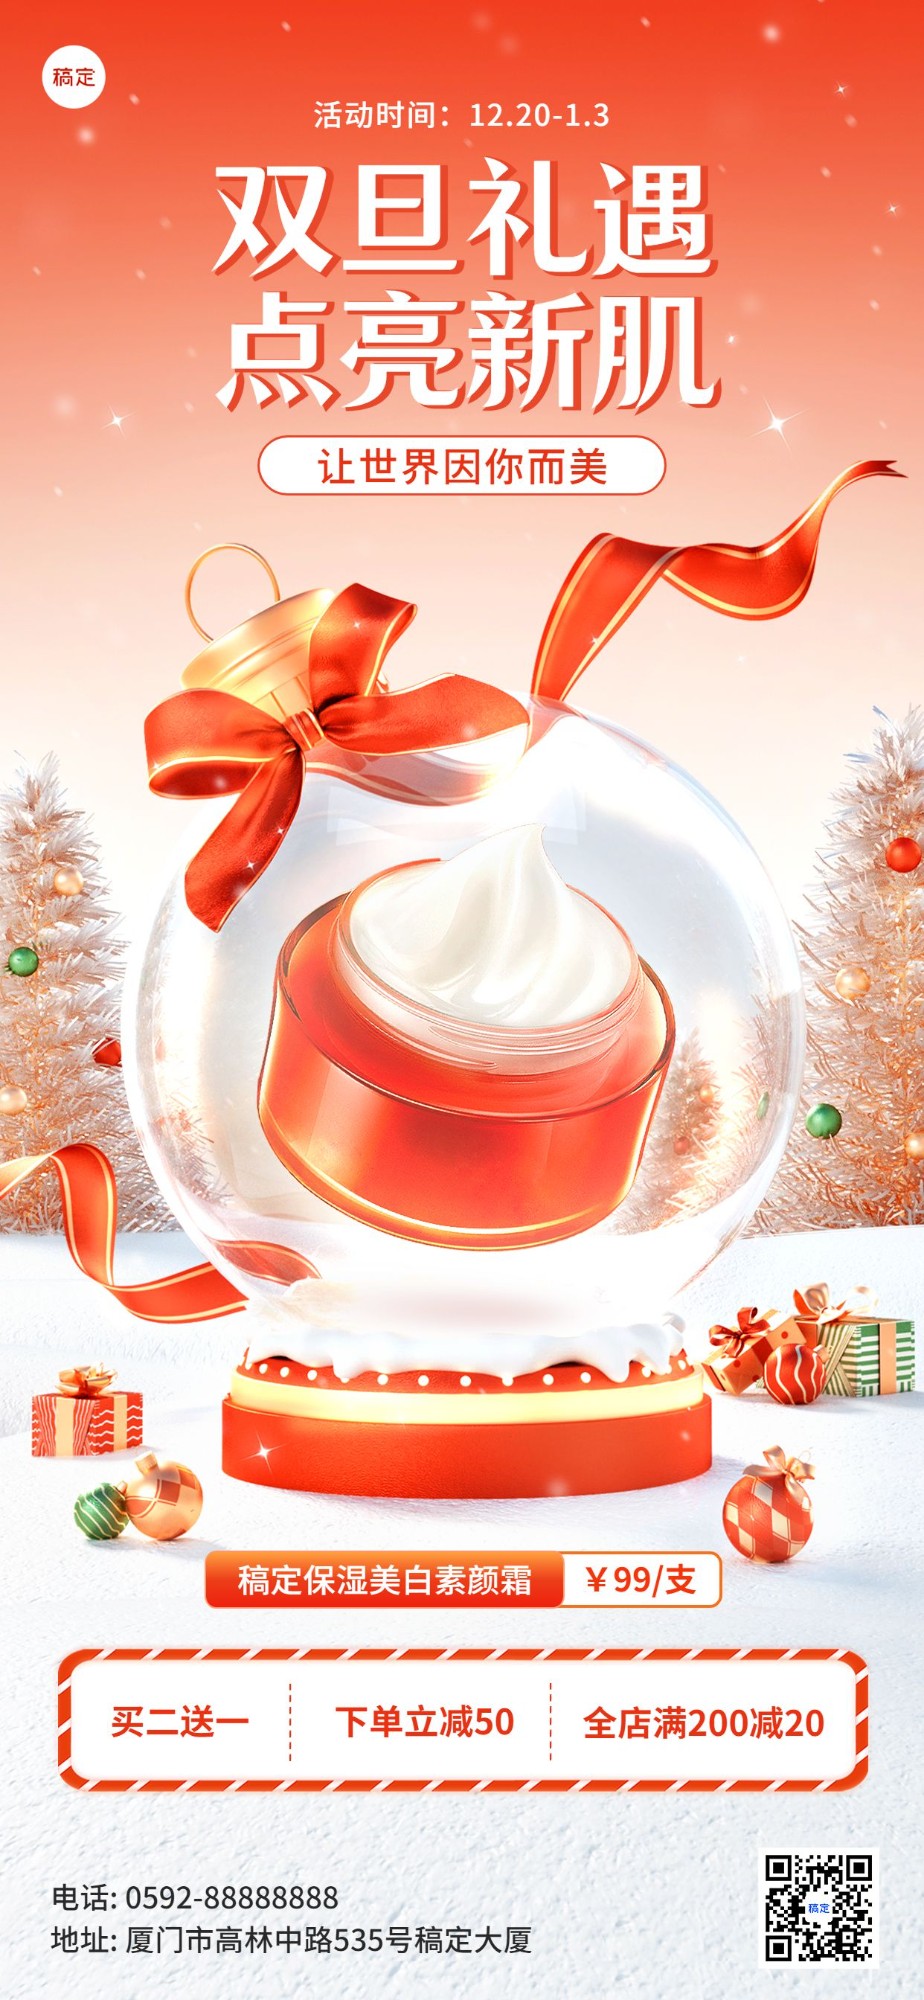 圣诞节美容美妆产品展示3d水晶球轻奢感全屏竖版海报